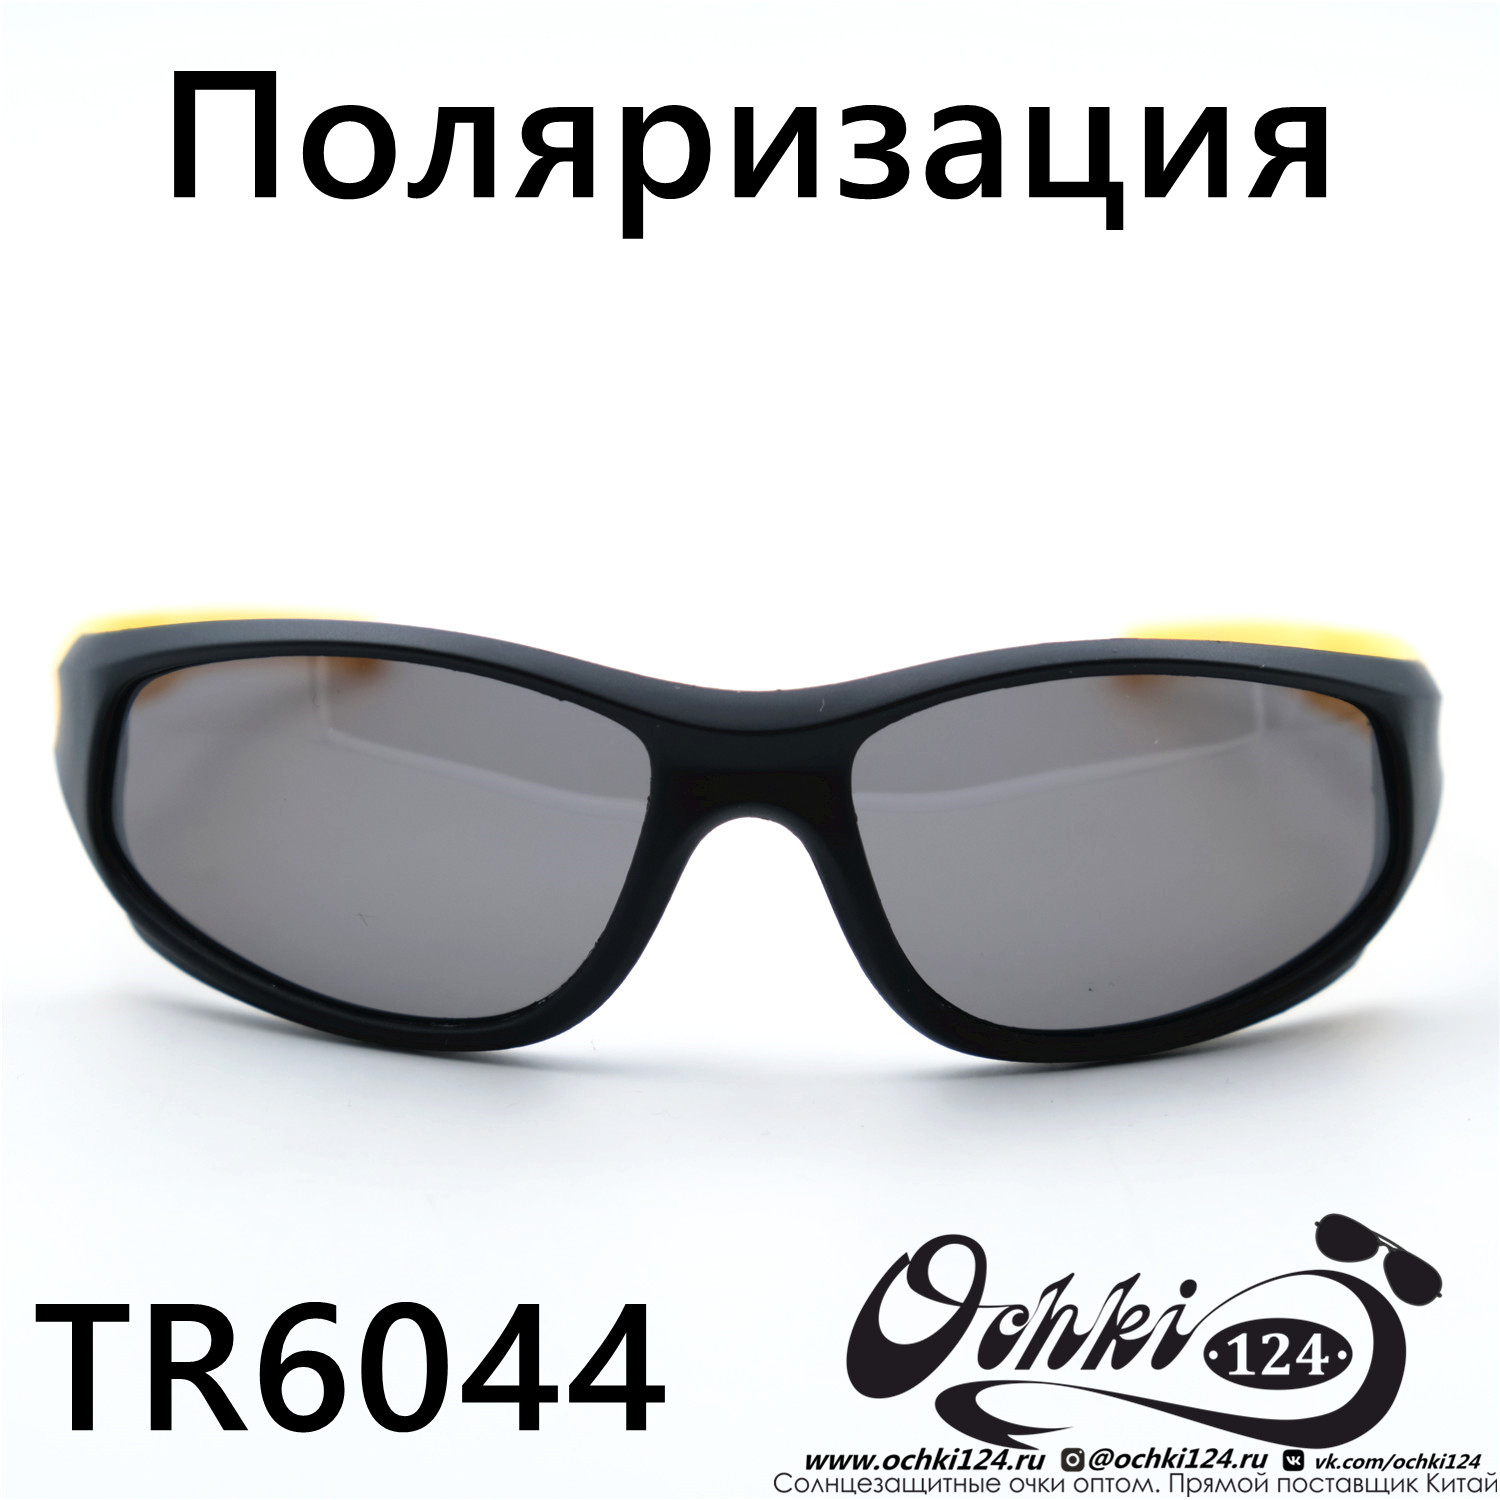  Солнцезащитные очки картинка 2023 Детские Поляризованные Спорт  TR6044-C3 